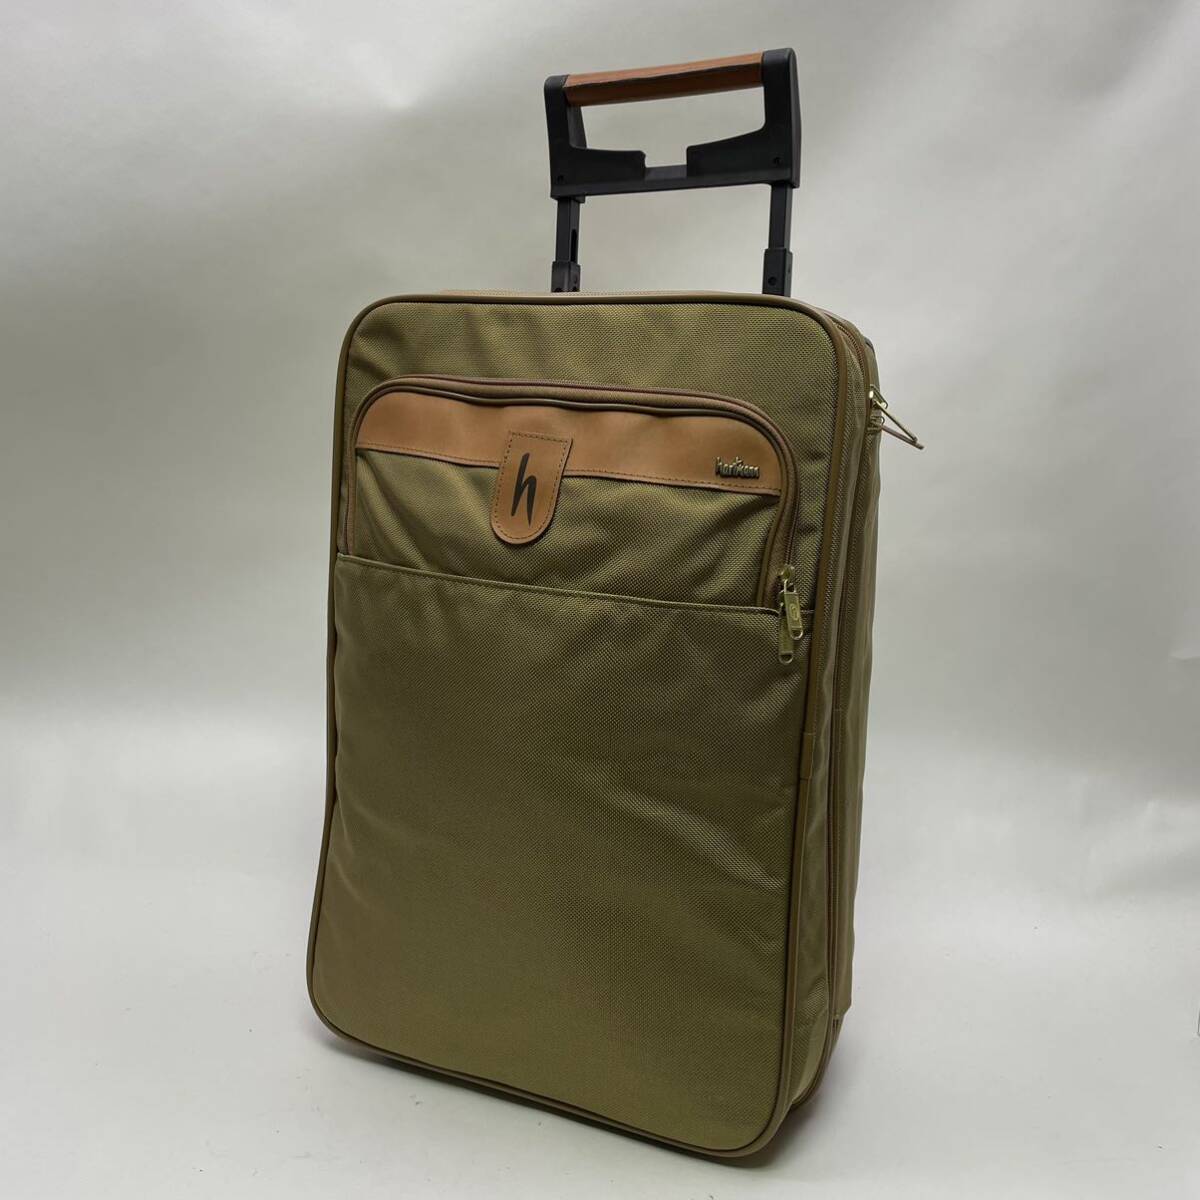  beautiful goods!! hartmann Heart man Carry case suitcase bag travel business trip 2 wheel D6-1